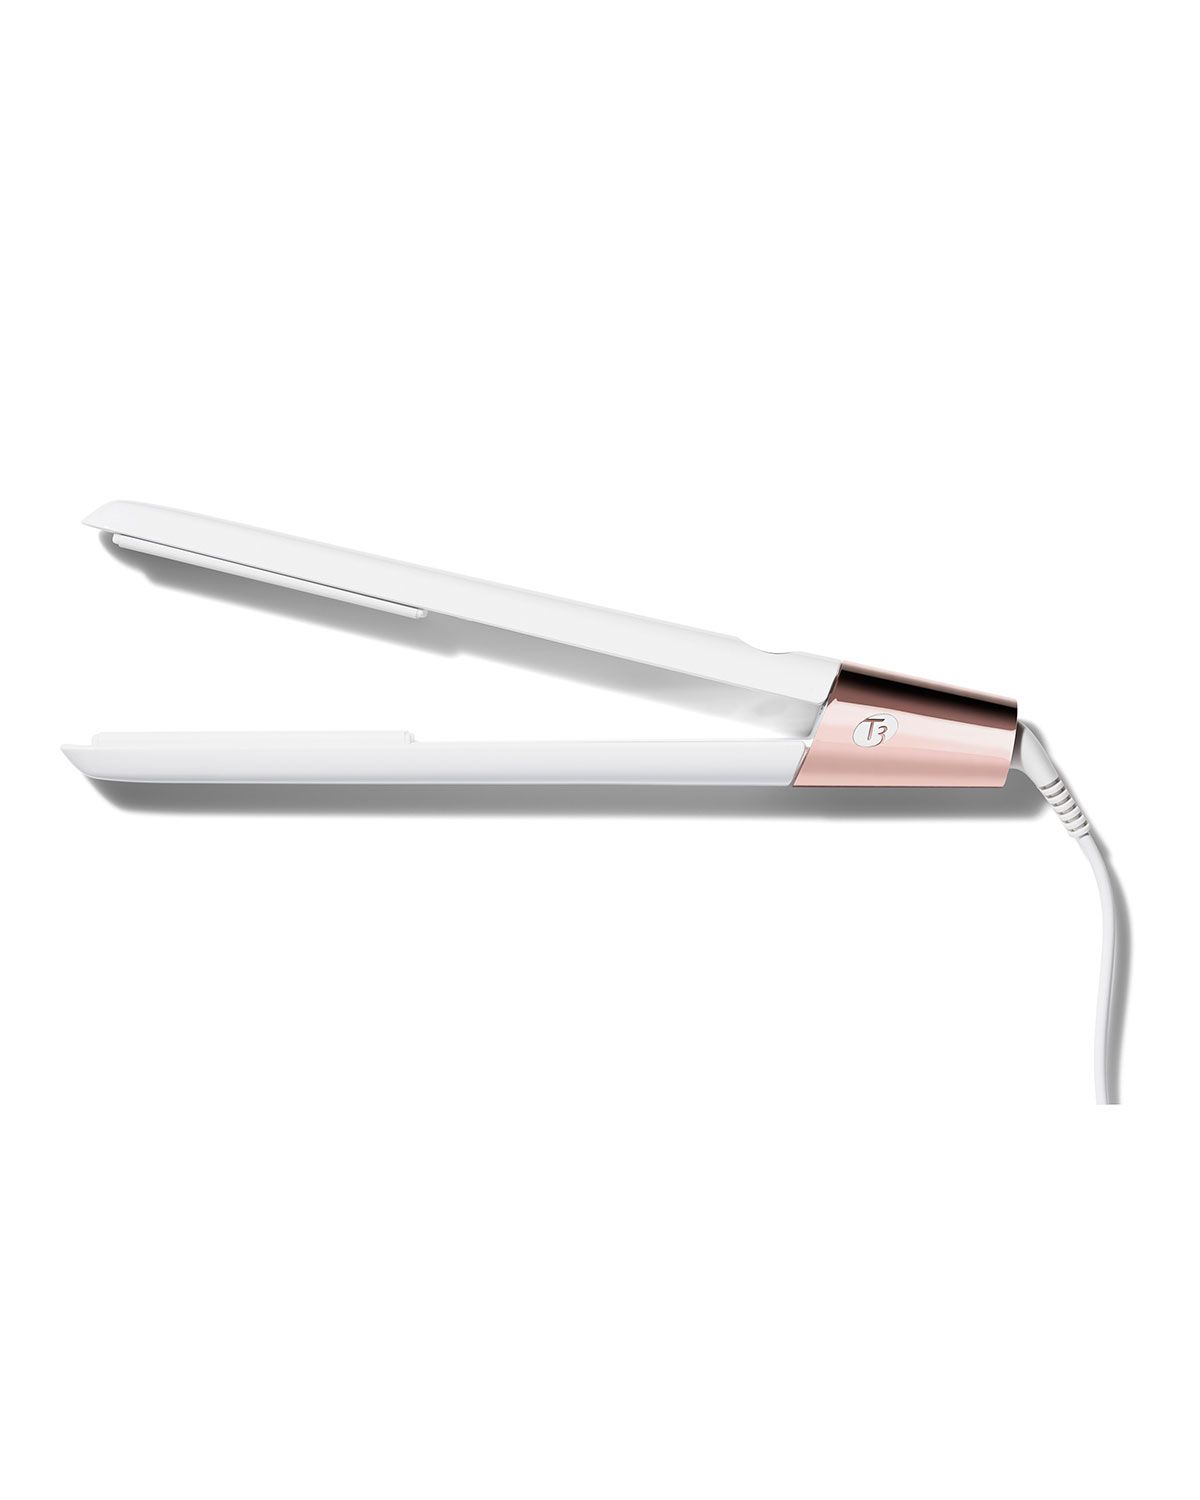 SinglePass Luxe Straightening & Styling Iron | Neiman Marcus